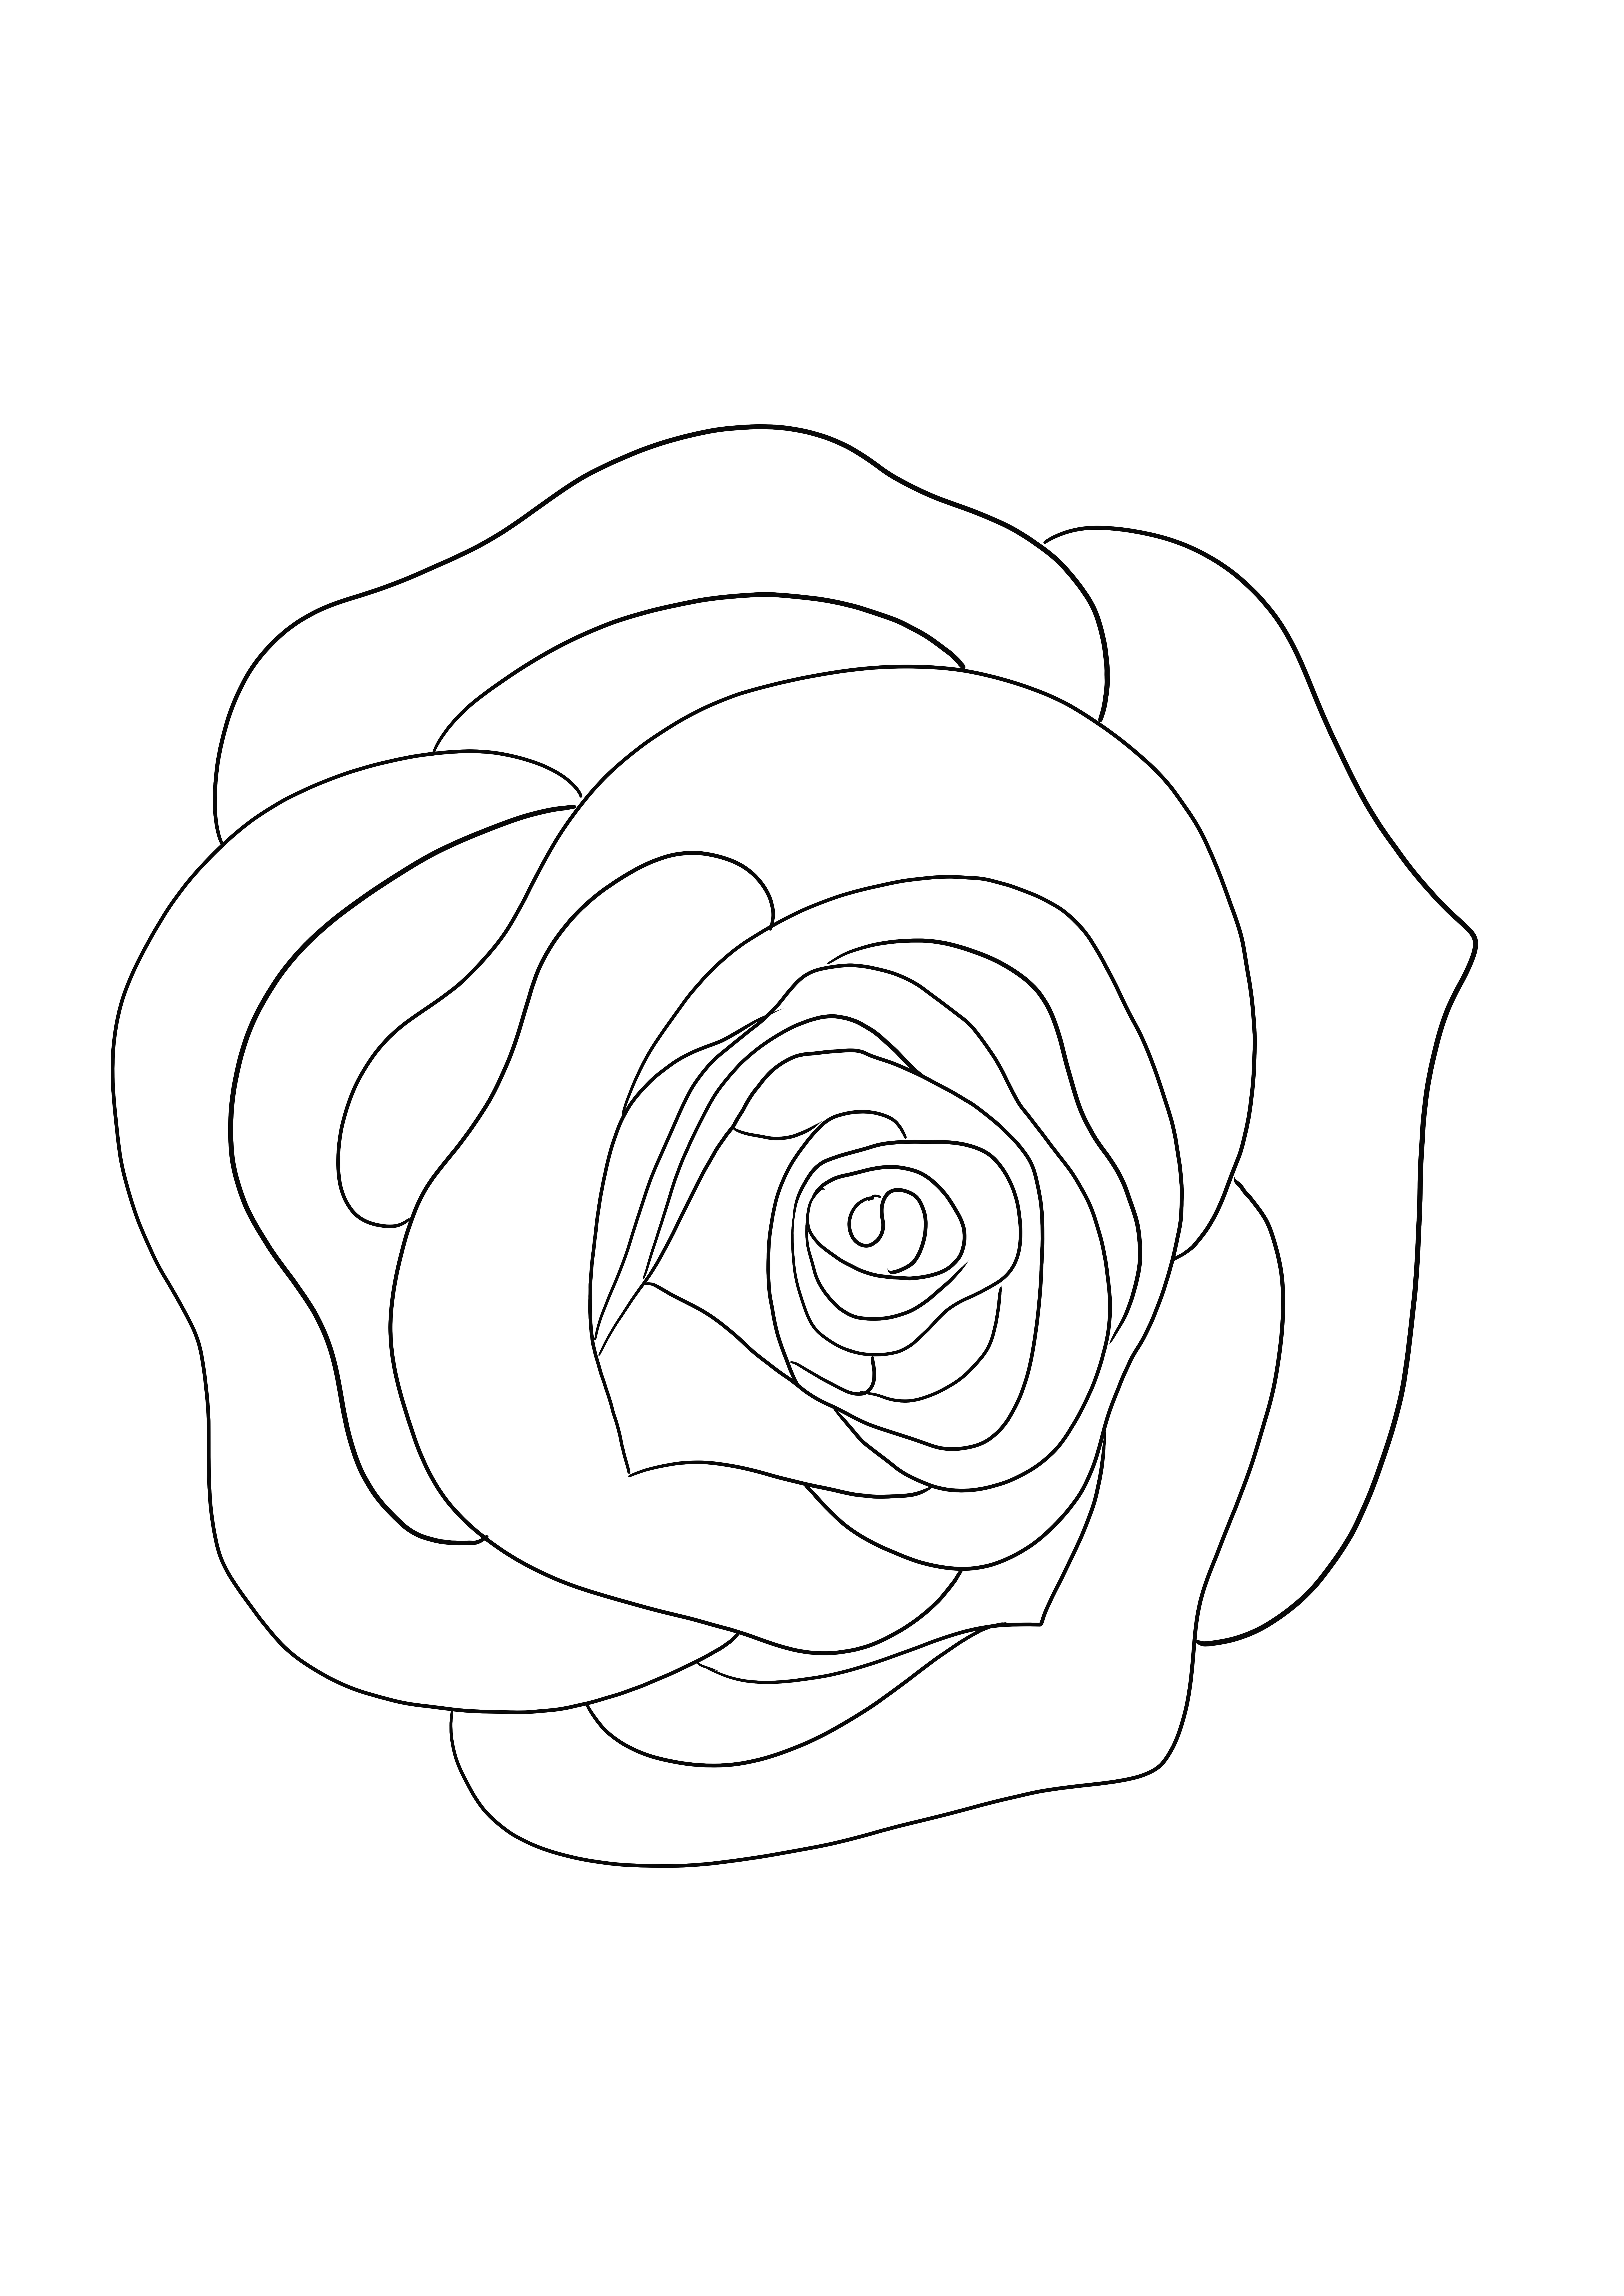 Una hoja para colorear de una rosa simple para descargar o imprimir gratis para niños